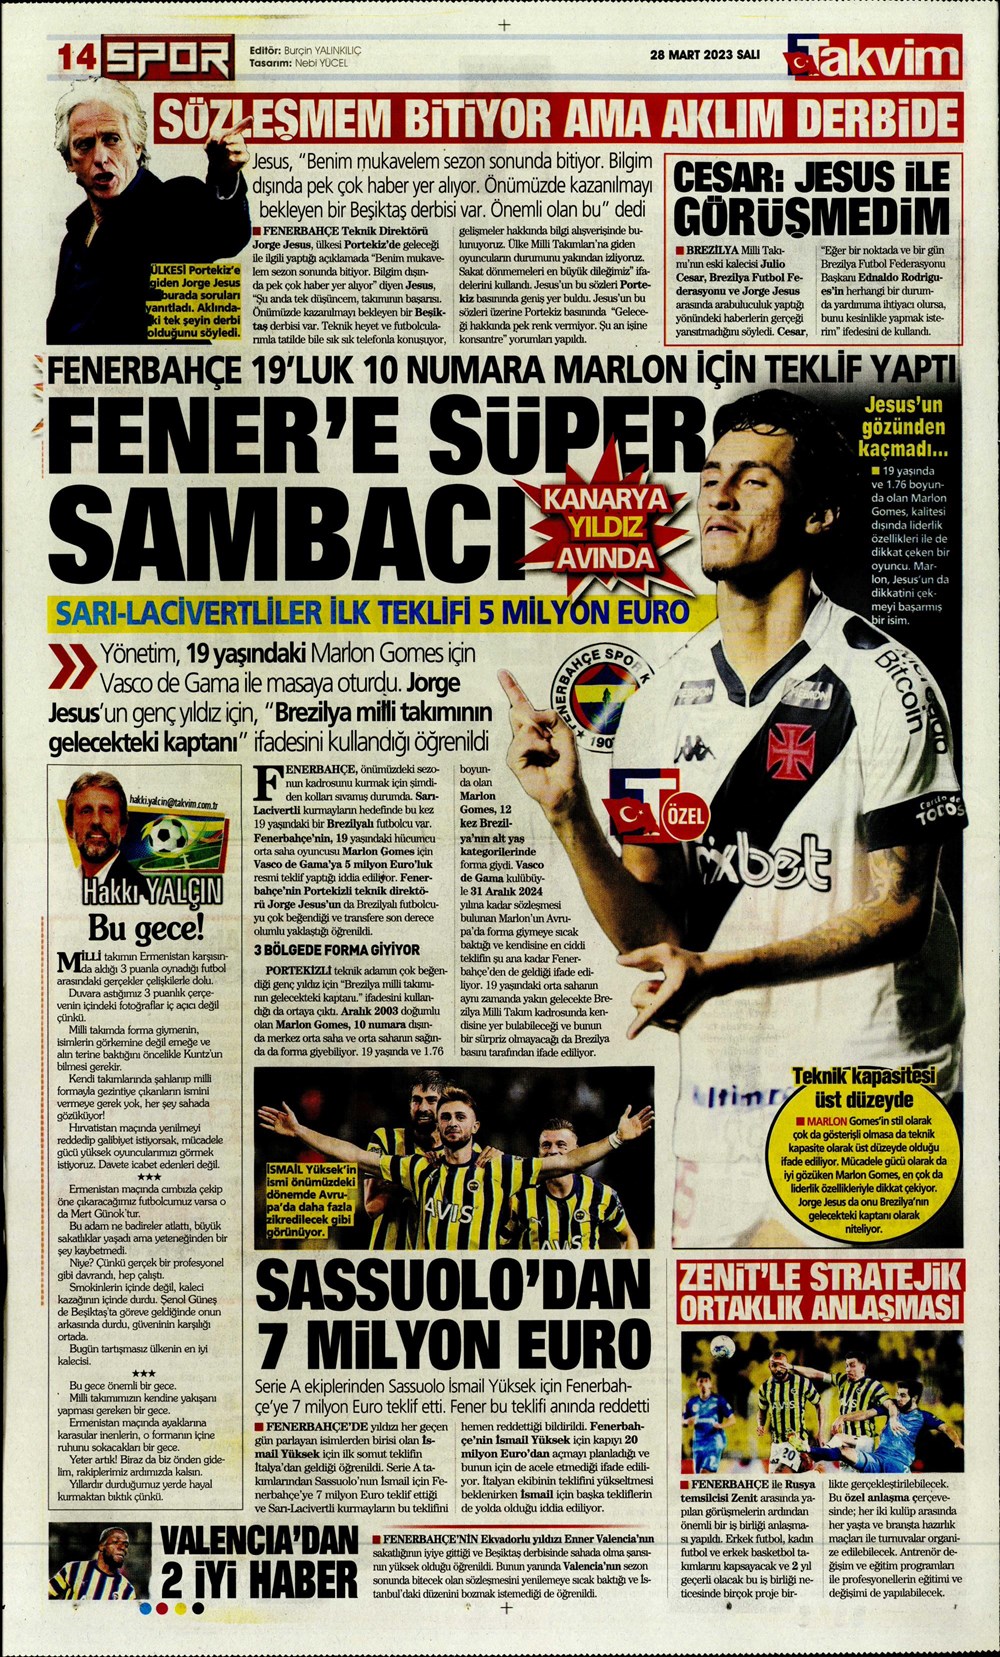 "Vurduğumuz gol olsun" - Sporun manşetleri - 31. Foto